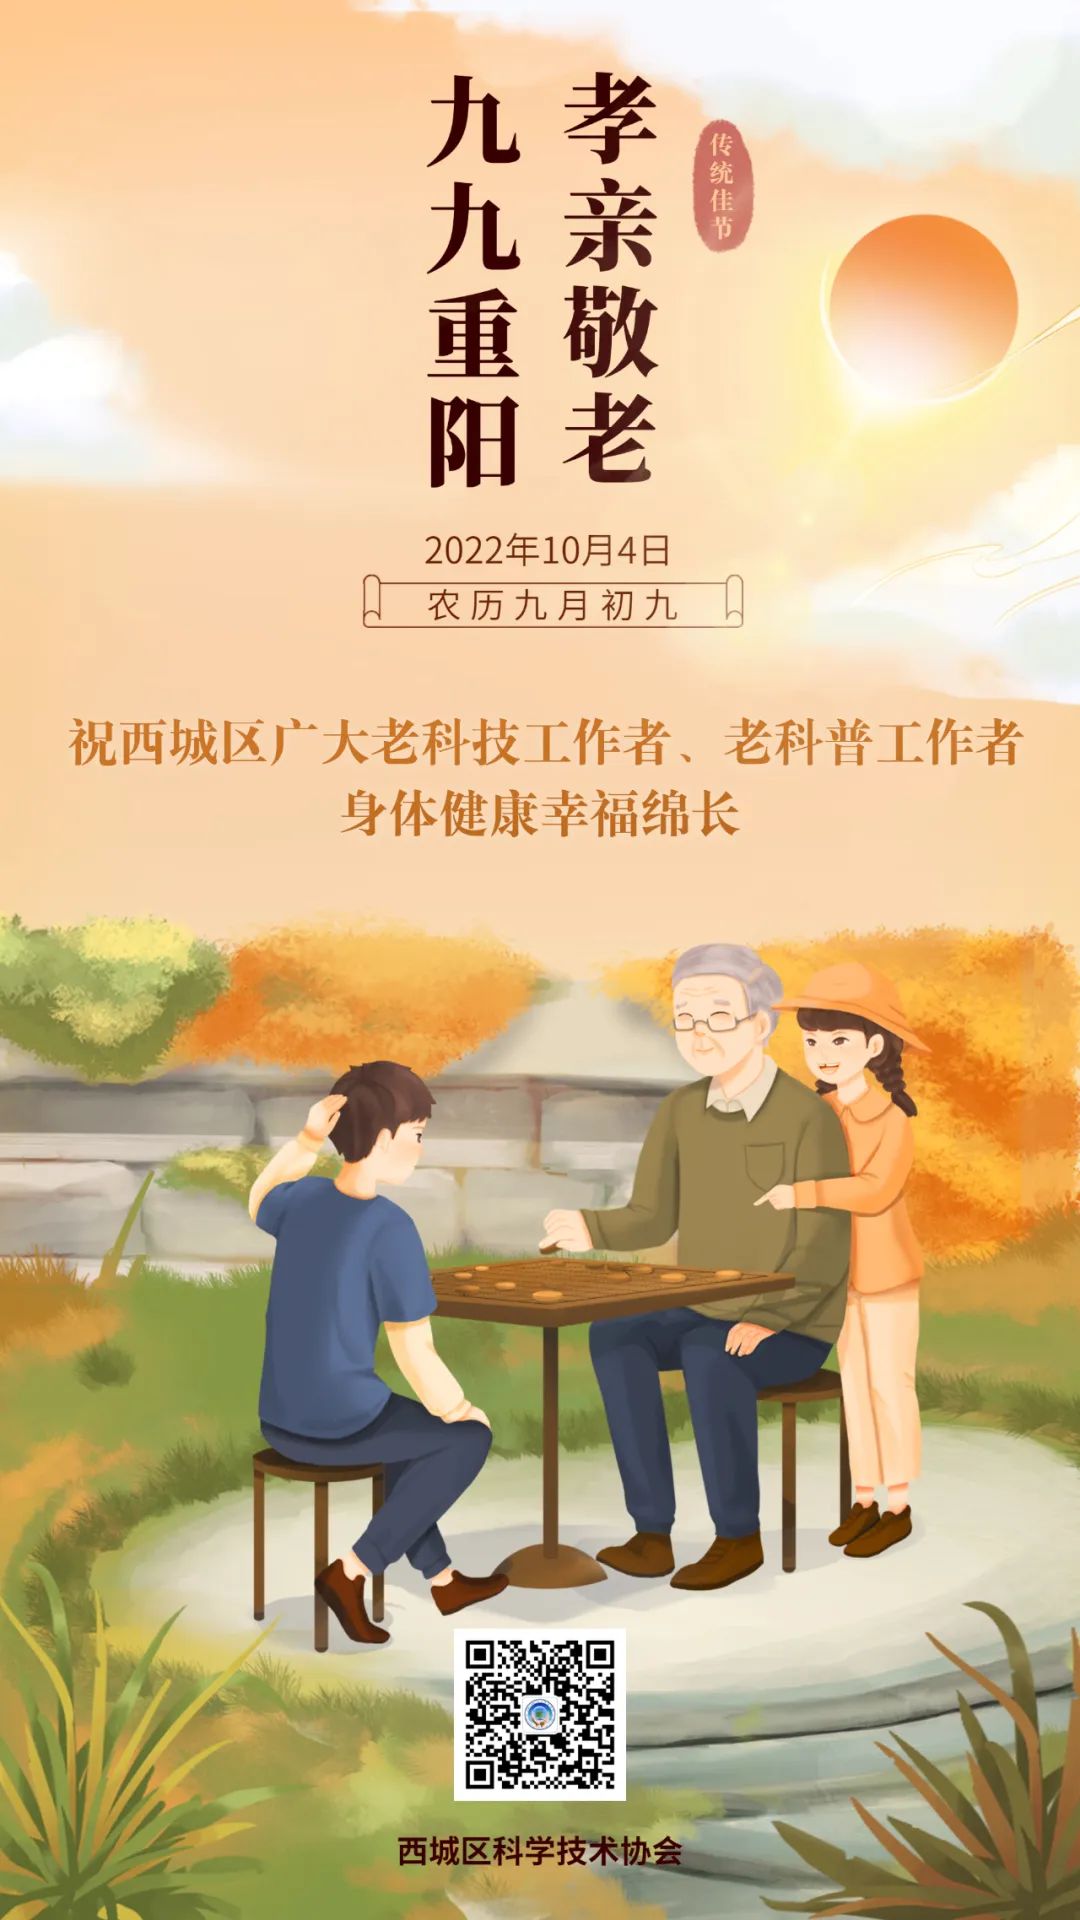 重阳节 | 祝北京西城区广大老科技工作者、老科普工作者身体健康幸福绵长